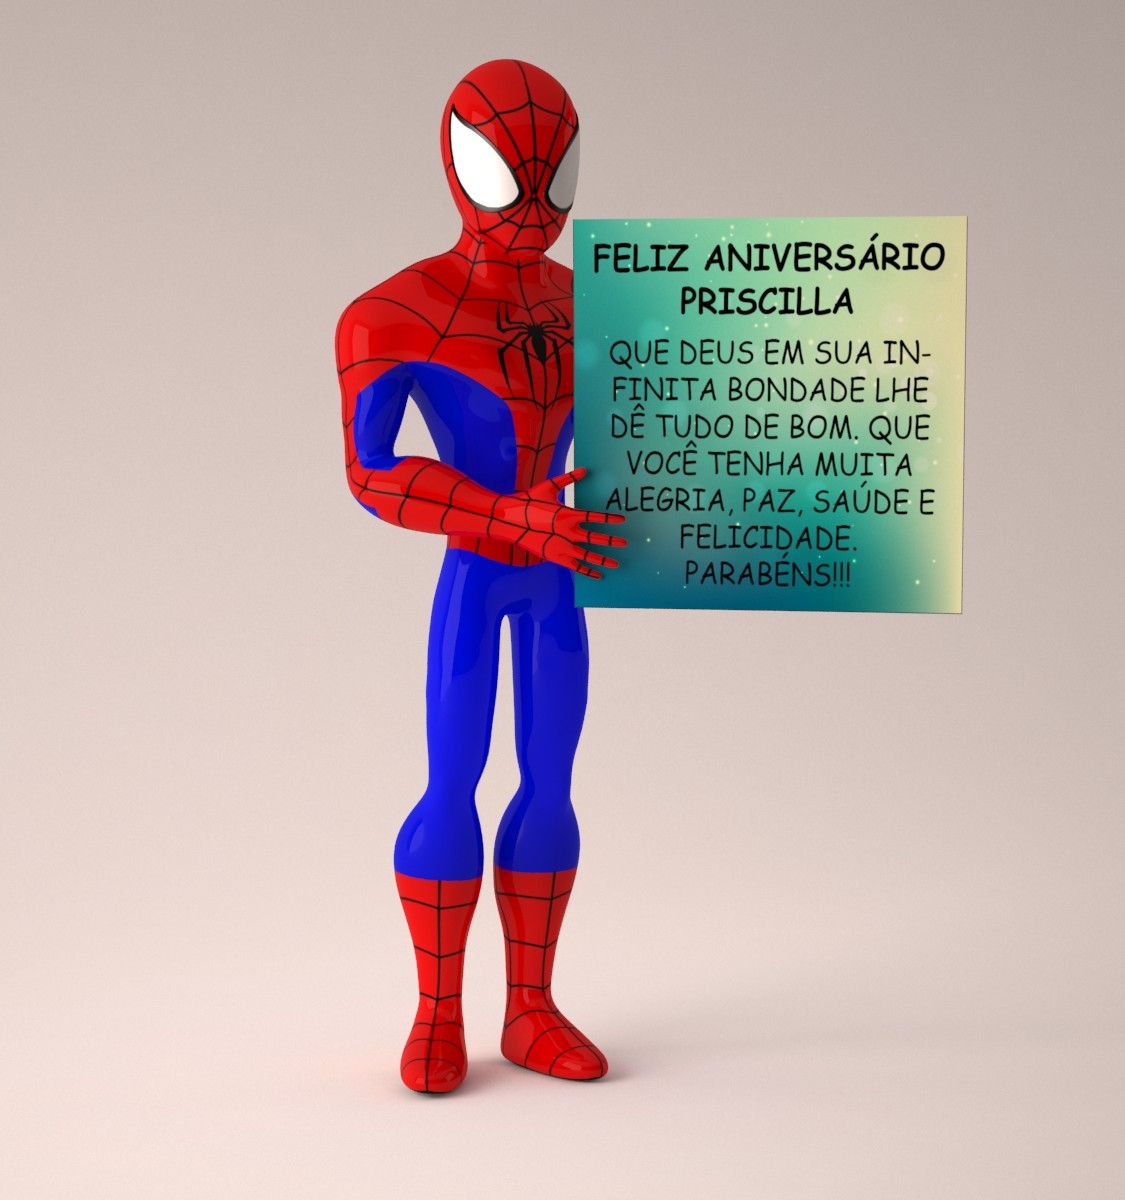 Thiago Brolly - Spider man